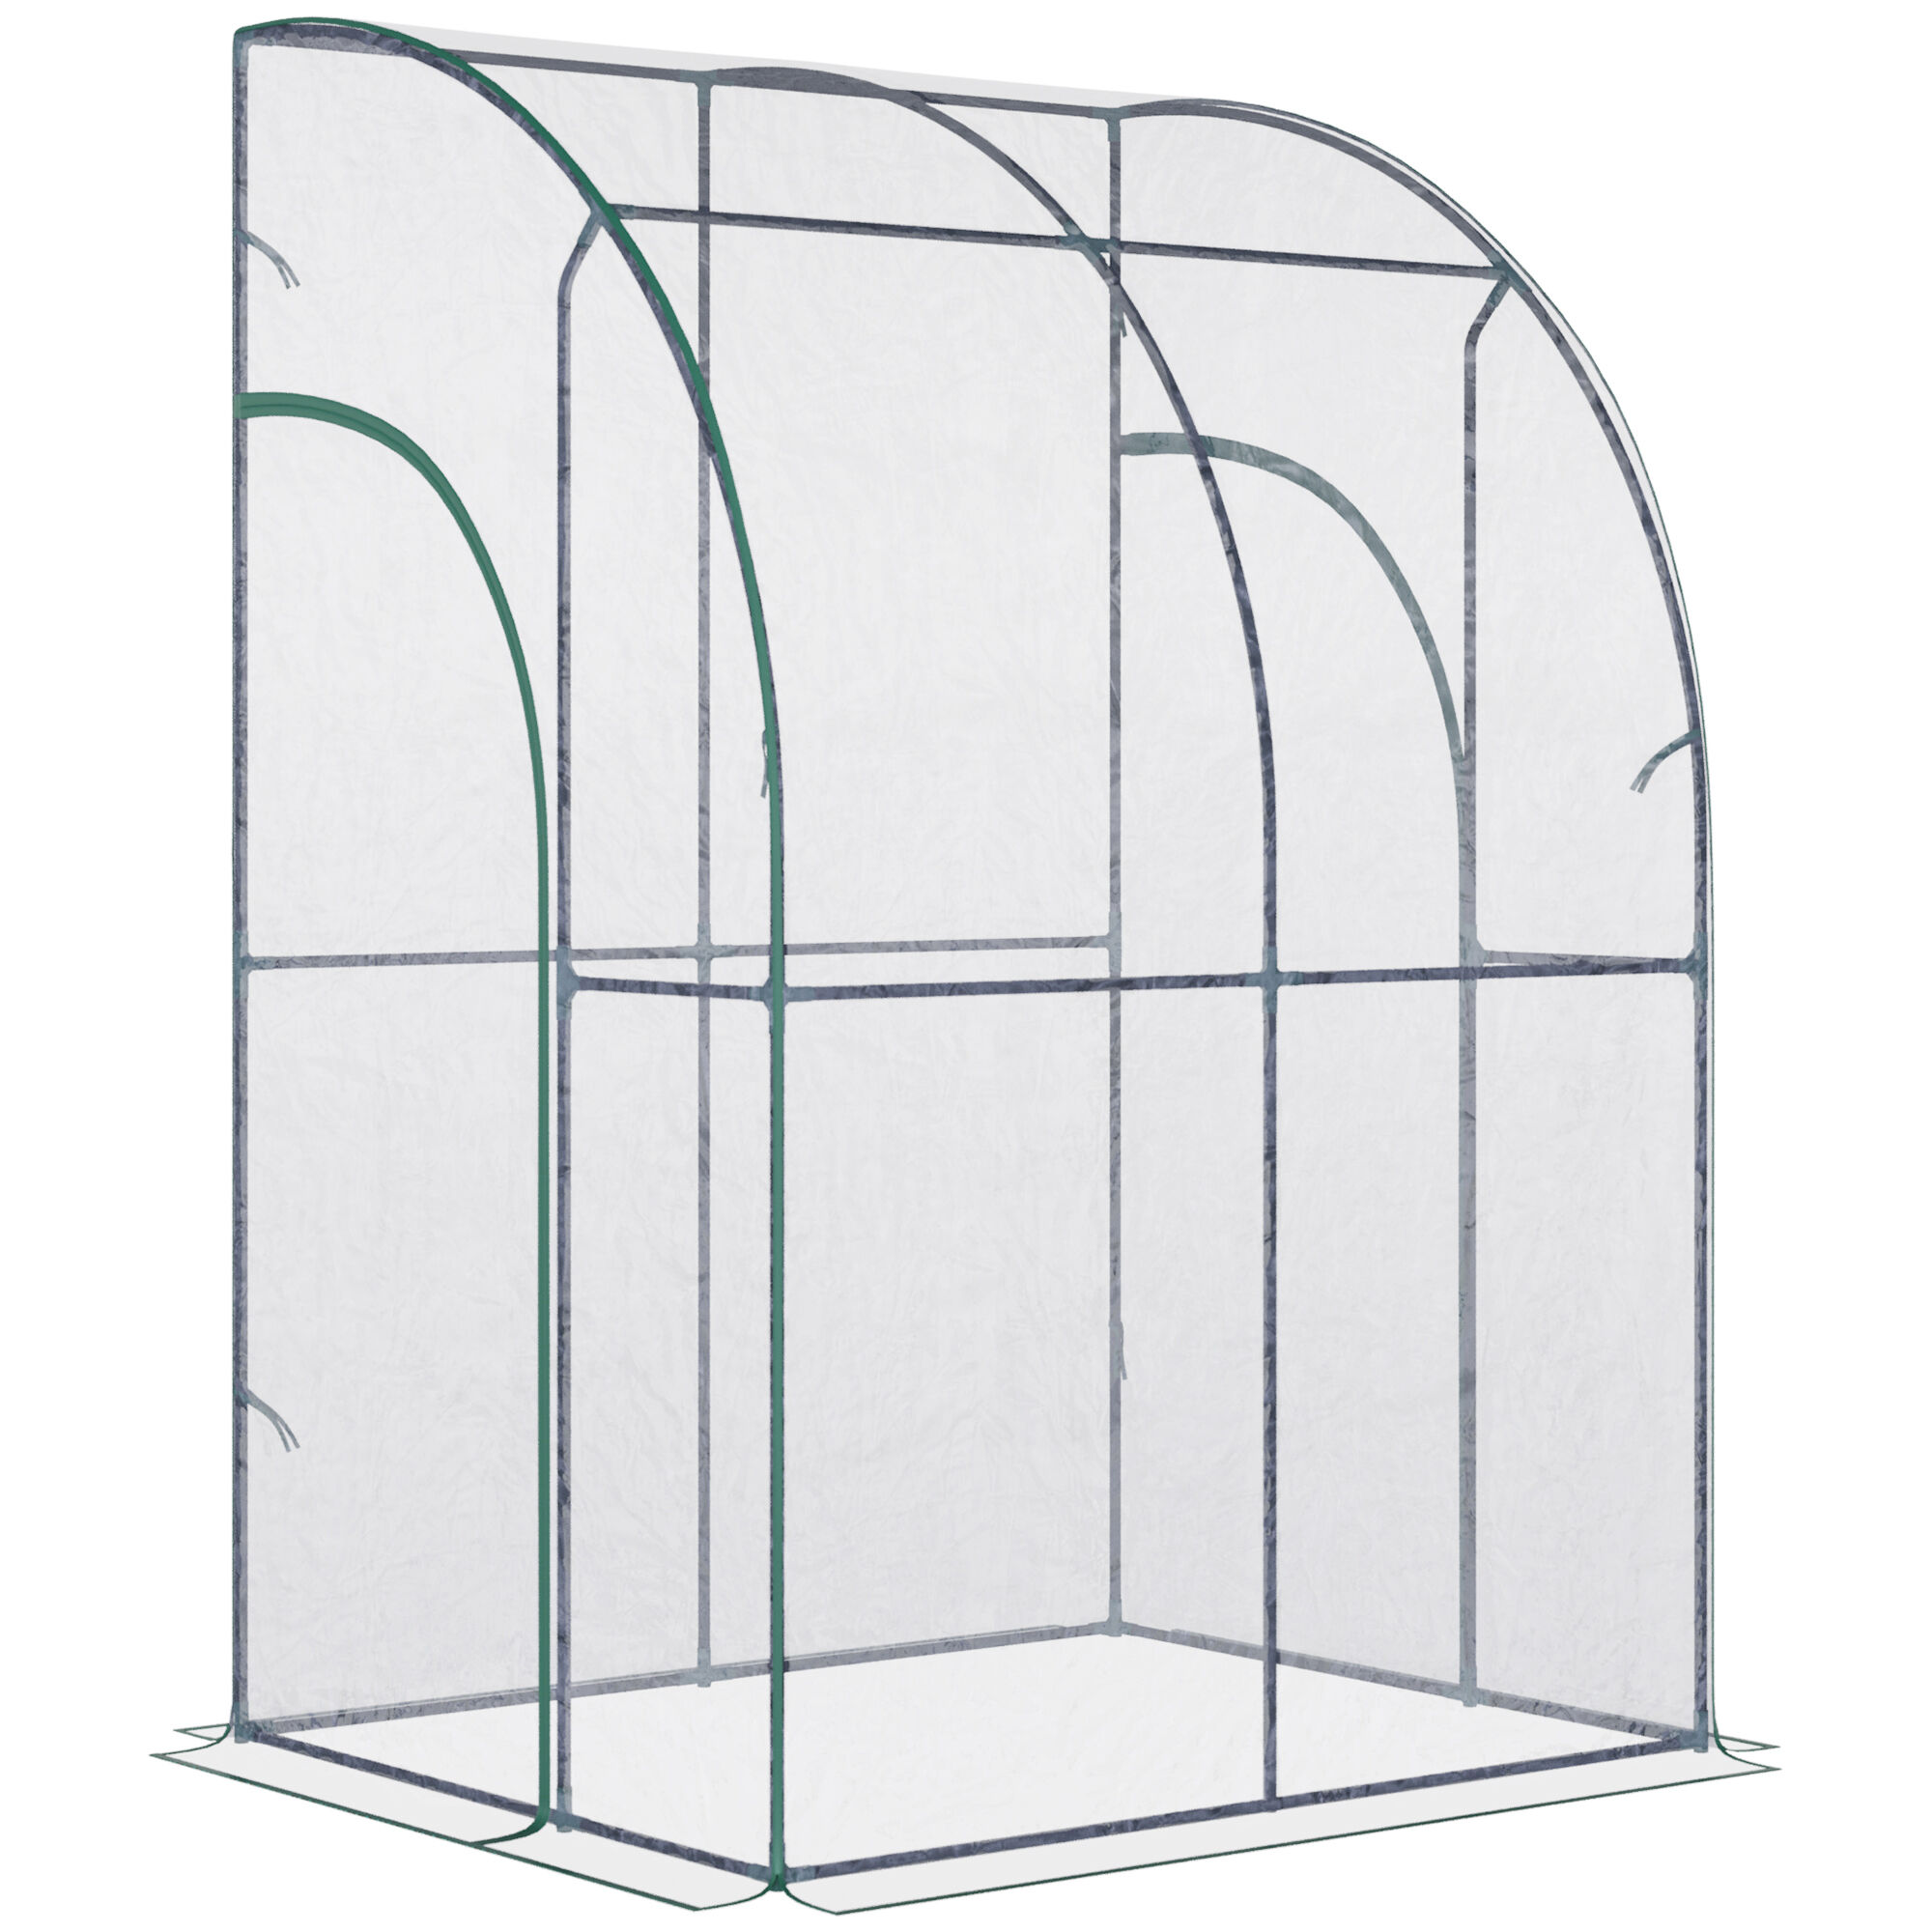 Outsunny Serre de jardin adossée dim. 1,43L x 1,18l x 2,12H m 2 portes zippées enroulables acier bâche PVC haute densité transparentnull